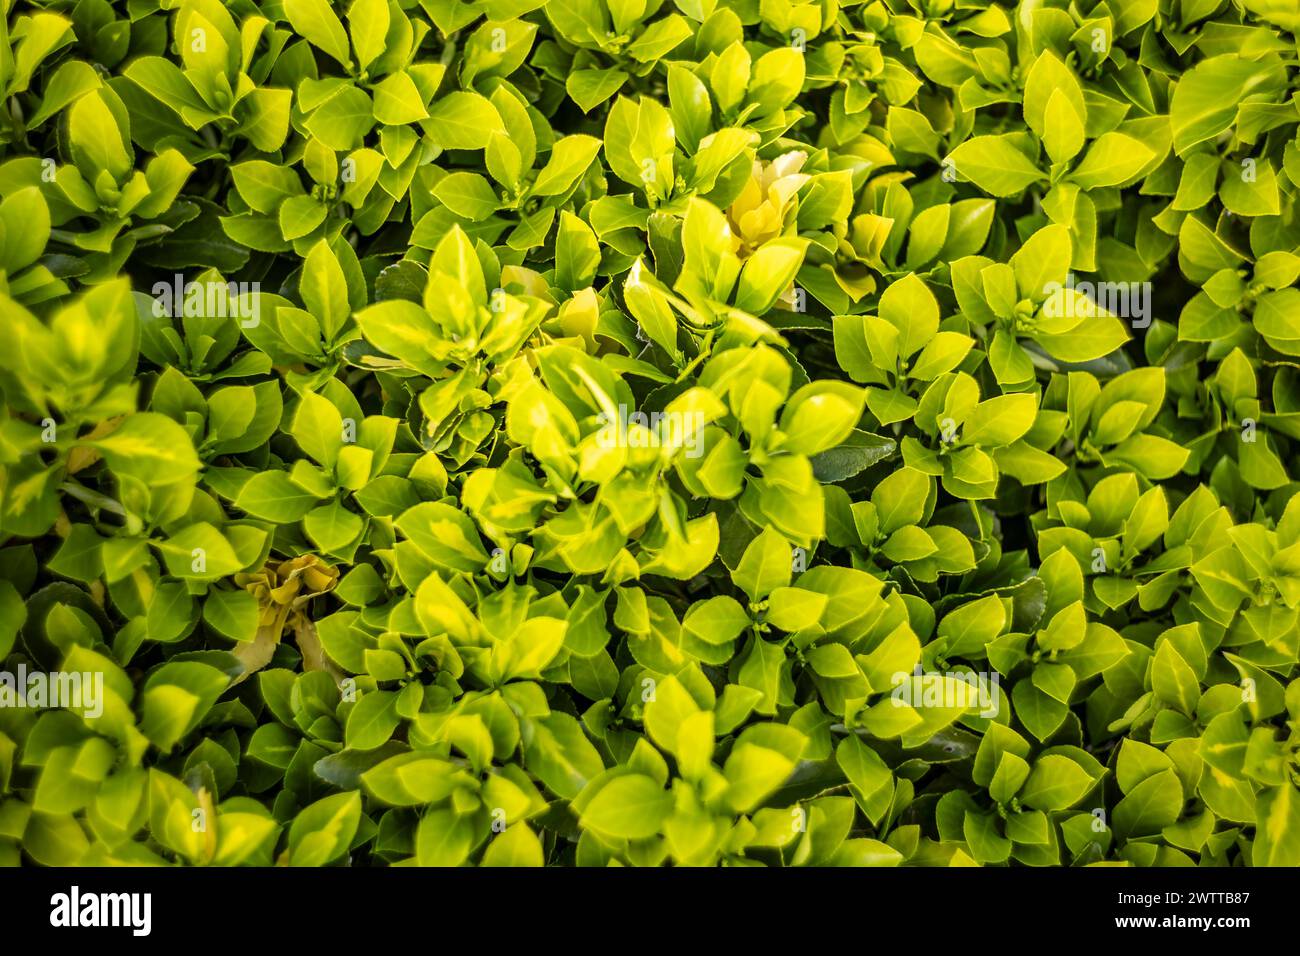 Vue détaillée d'un buisson avec des feuilles vertes vibrantes, mettant en valeur la beauté de la nature dans la vallée du Pô, en Italie. Banque D'Images